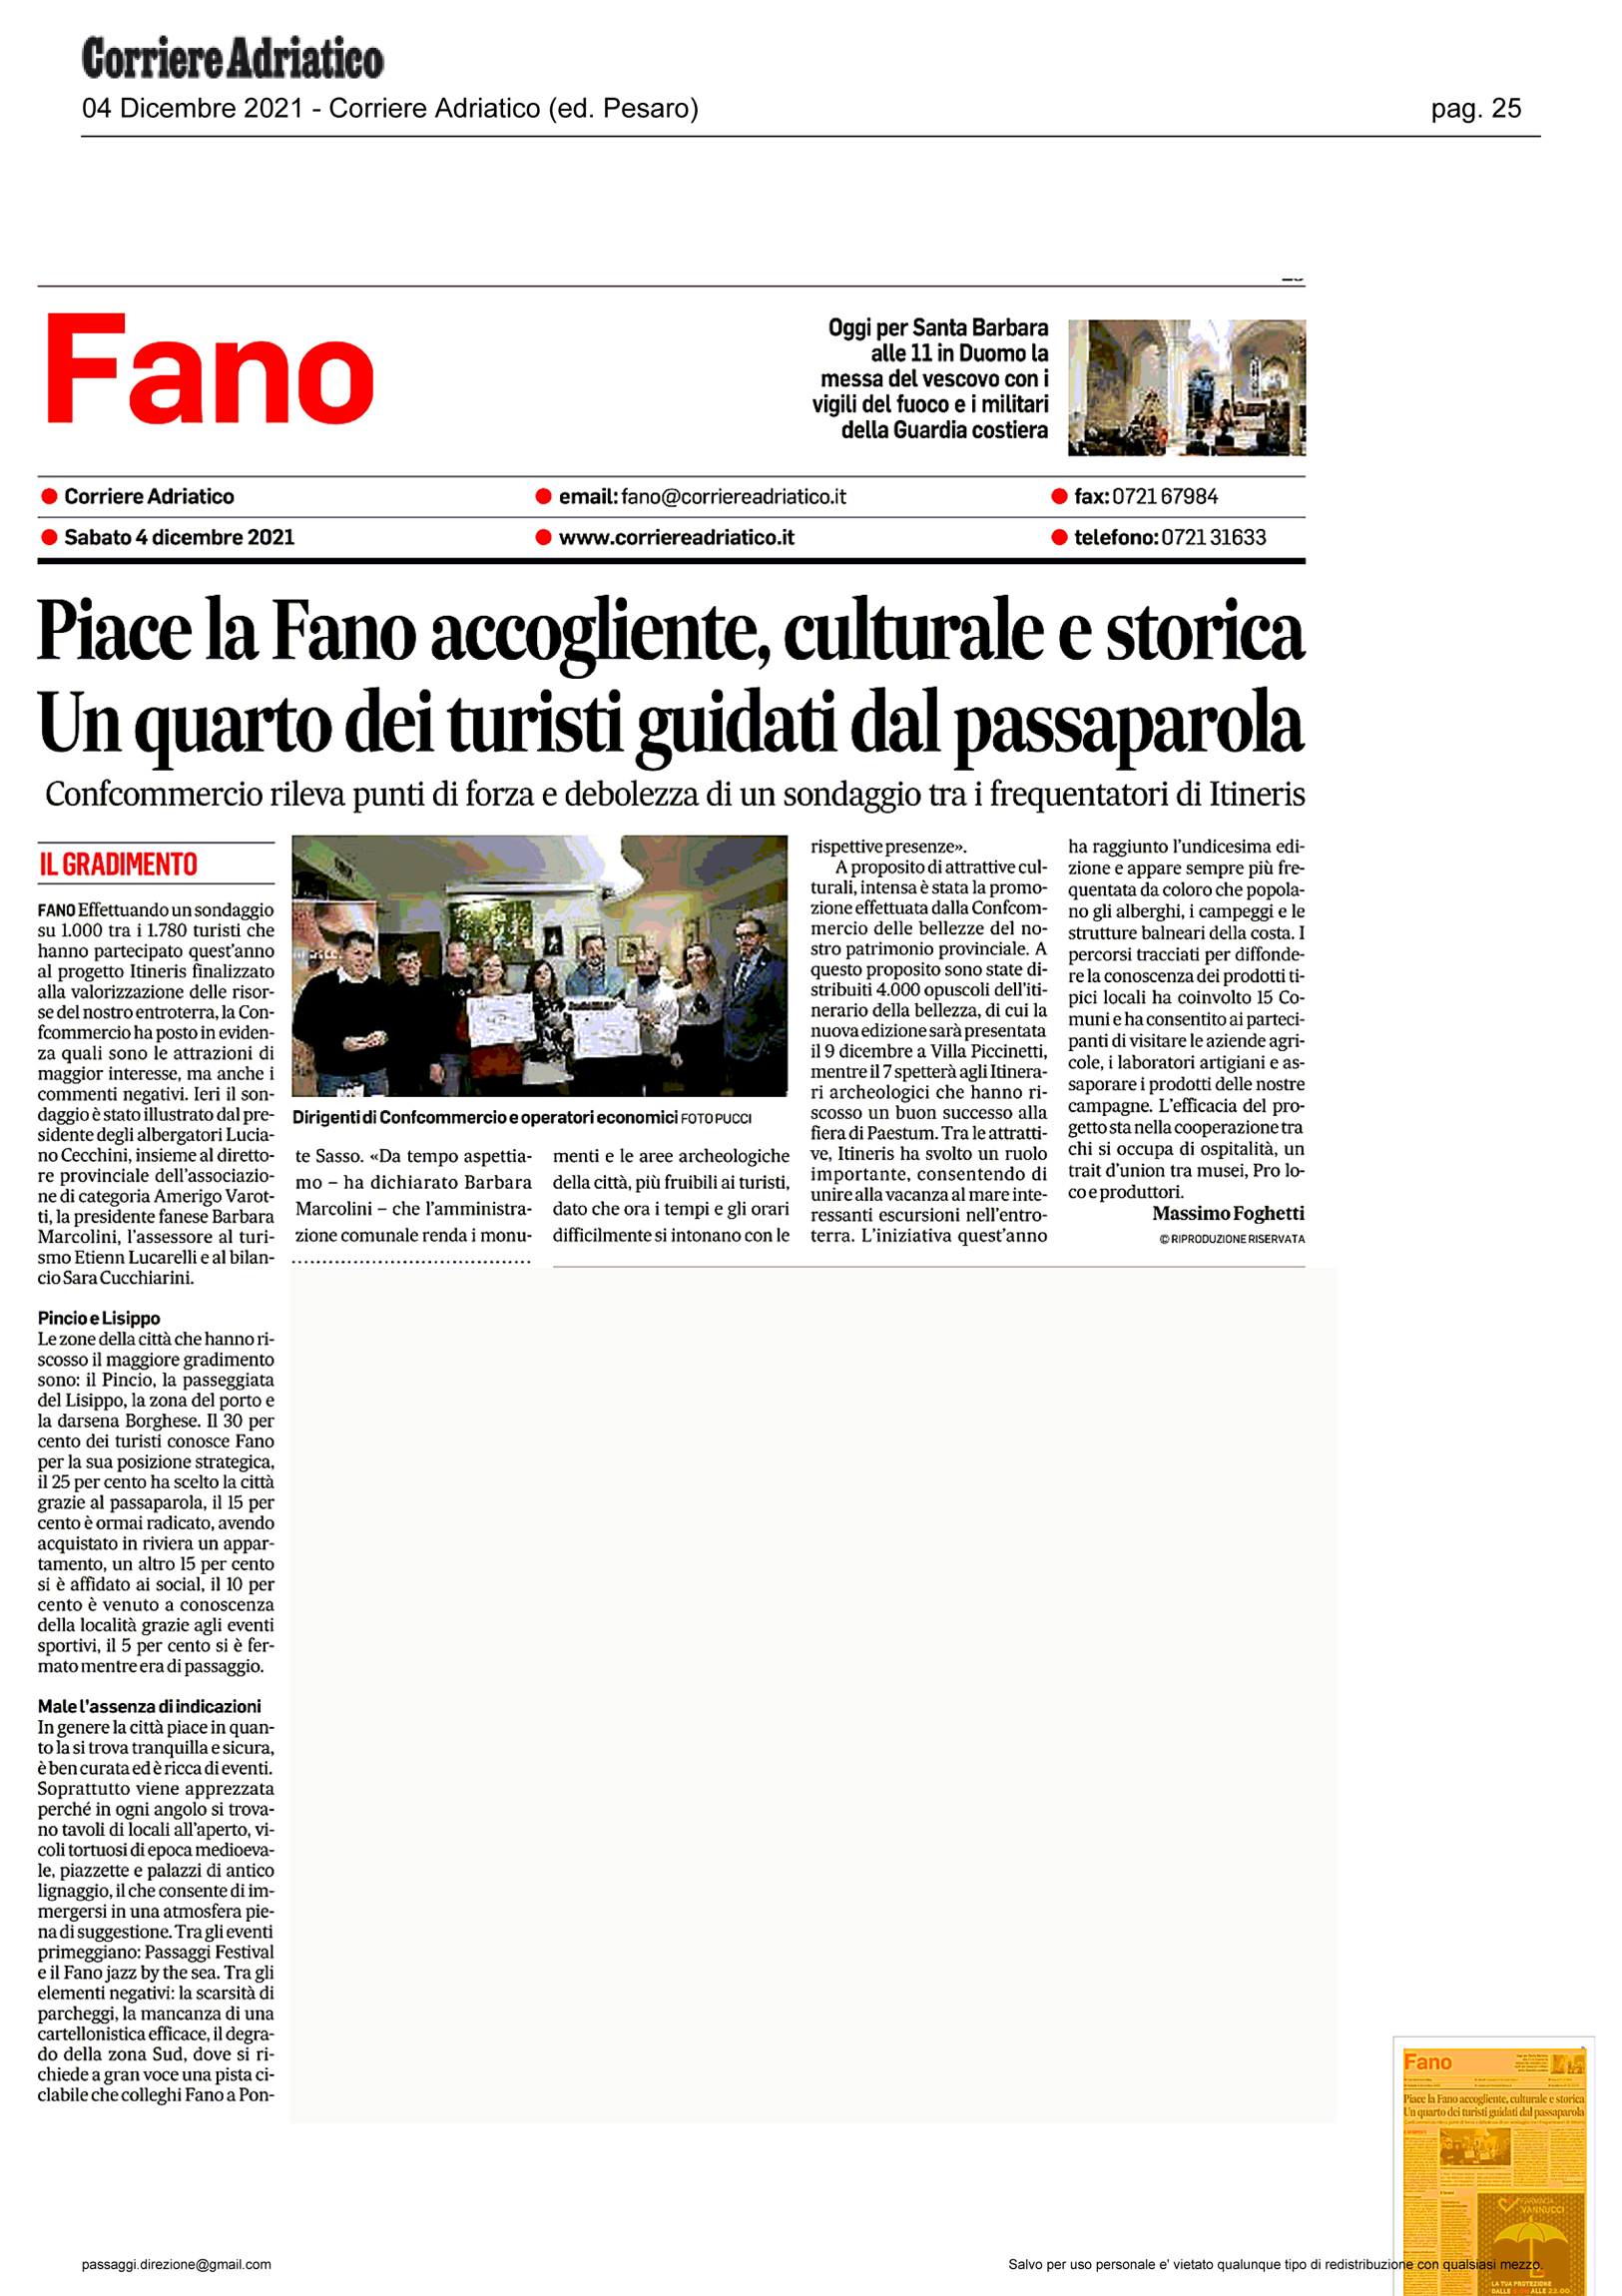 Corriere_Adriatico_piace-la-fano-accogliente-culturale-e-storica